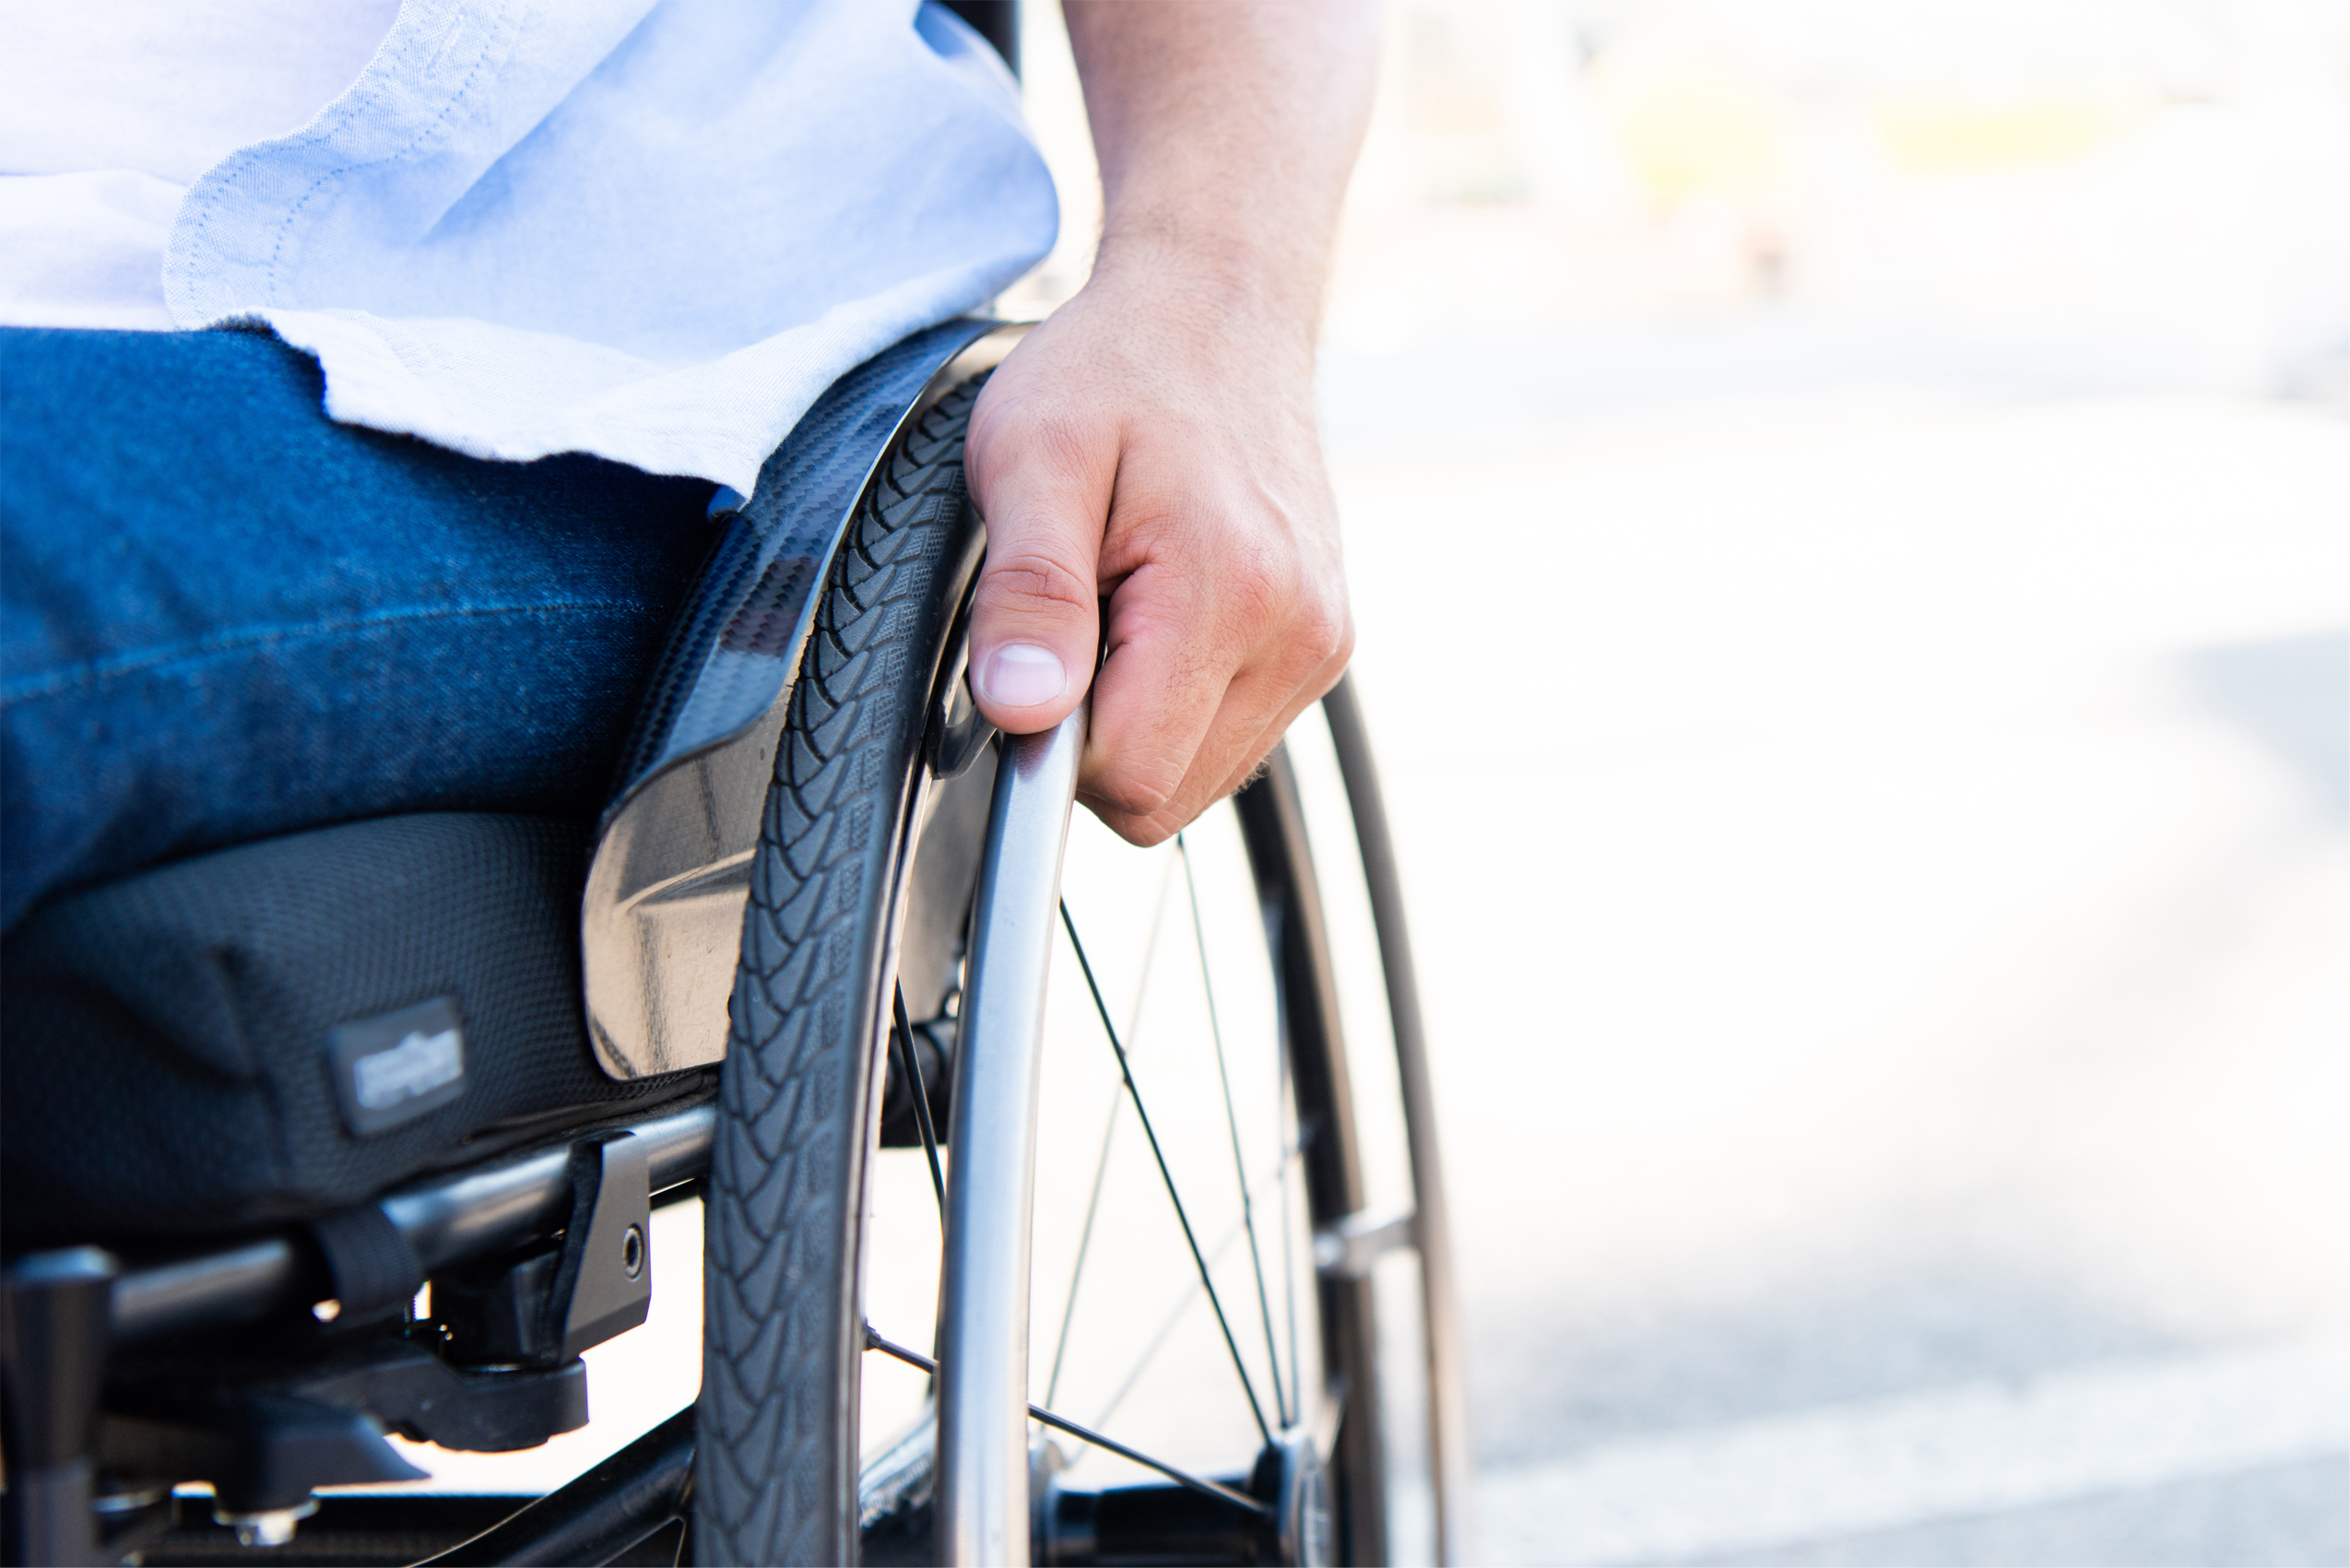 Zdjęcie osoby poruszającej się na wózku, zbliżenie na koło wózka.